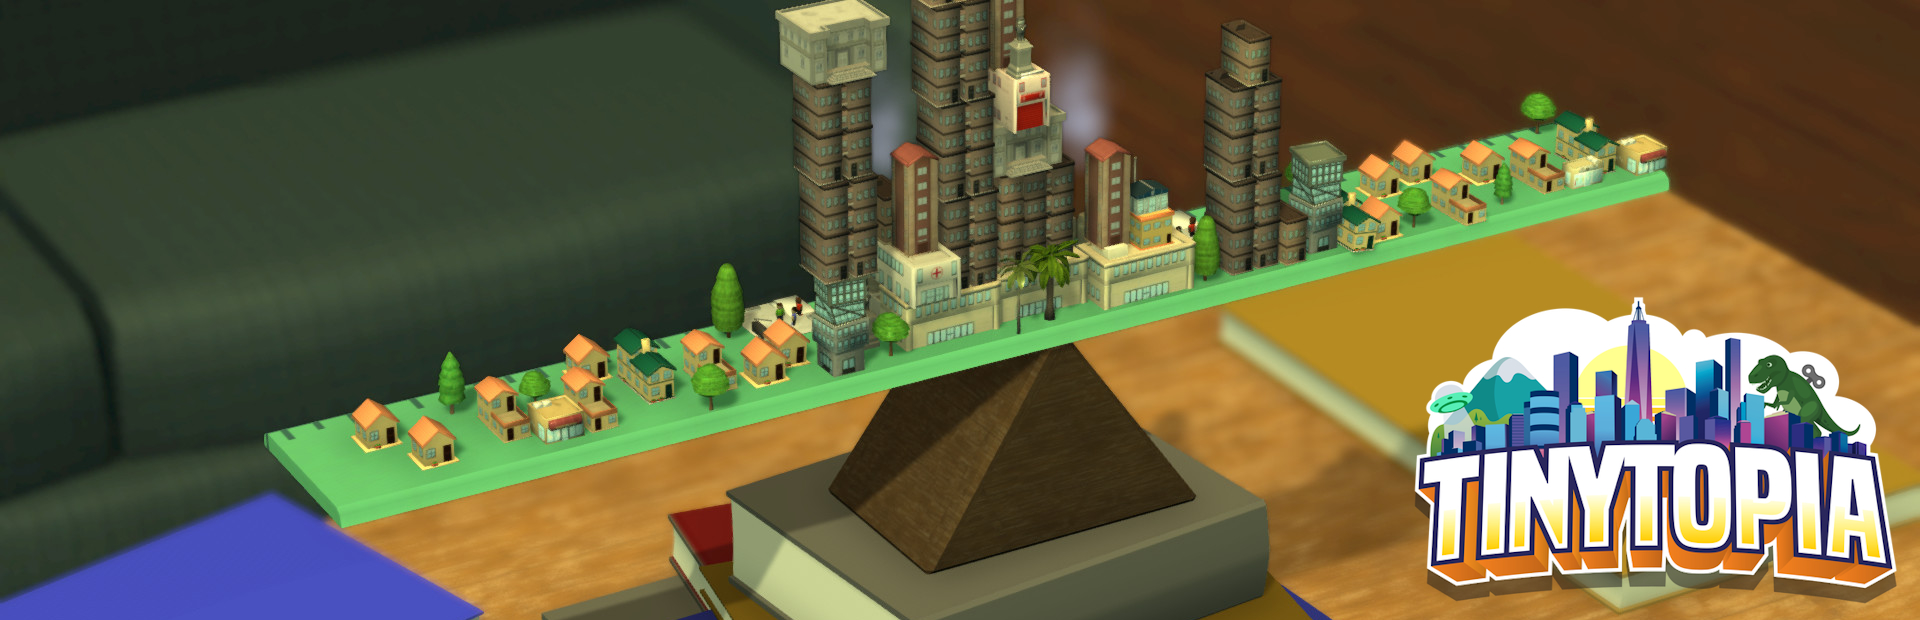 دانلود بازی Tinytopia برای PC | گیمباتو